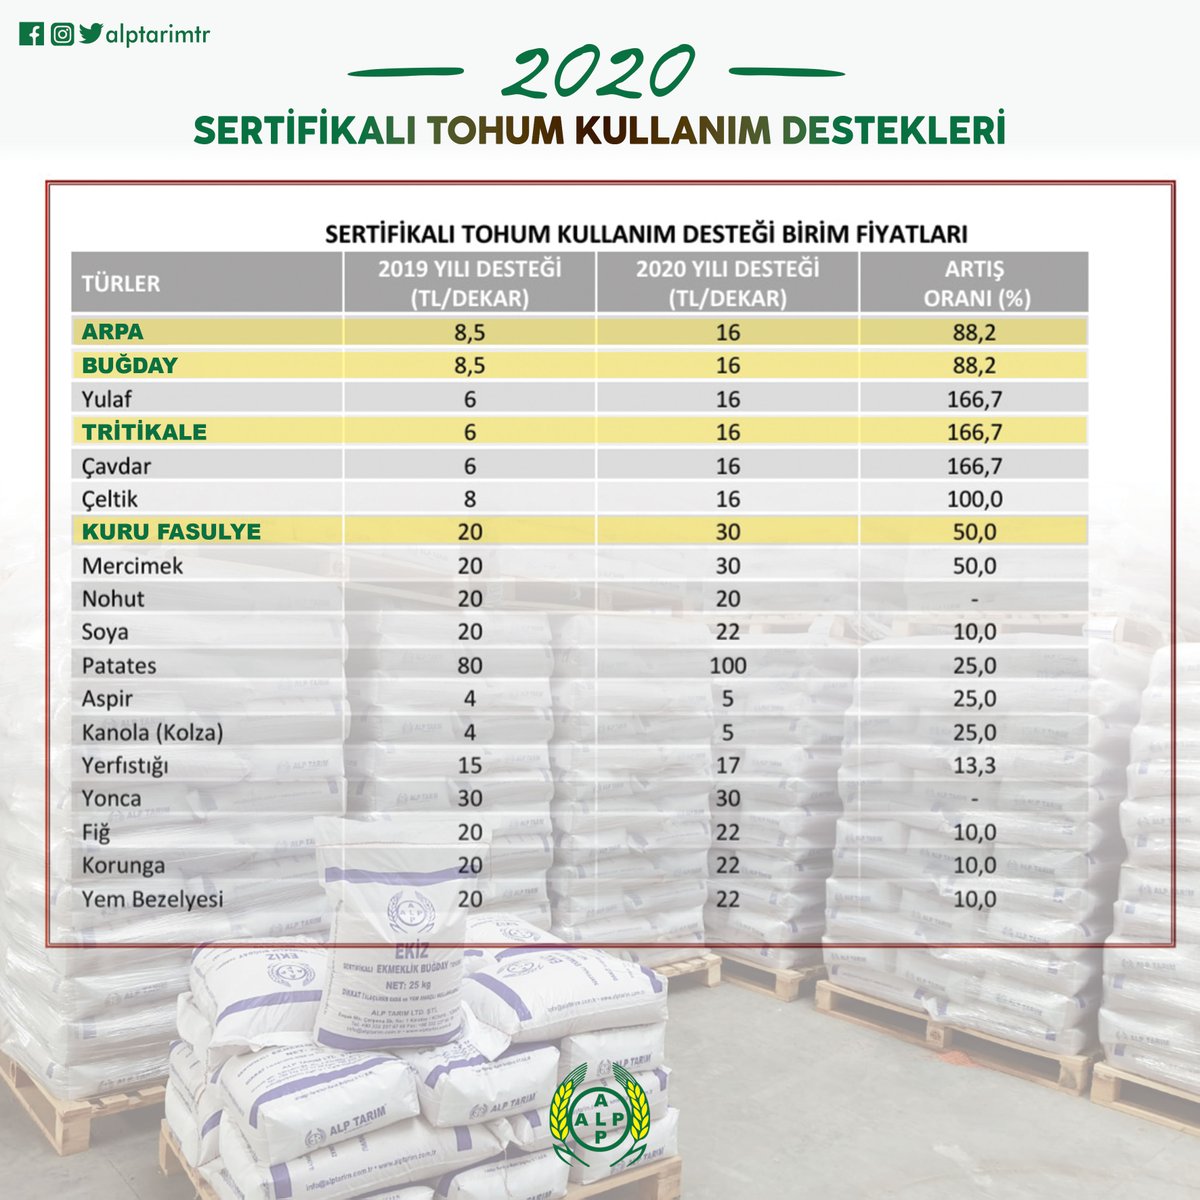 2020 Yılı Sertifikalı Tohum Kullanım Destekleri
#alptarım #sertifikalıtohum #hububat #tohum #tarım #ziraat #çiftçi #üretici